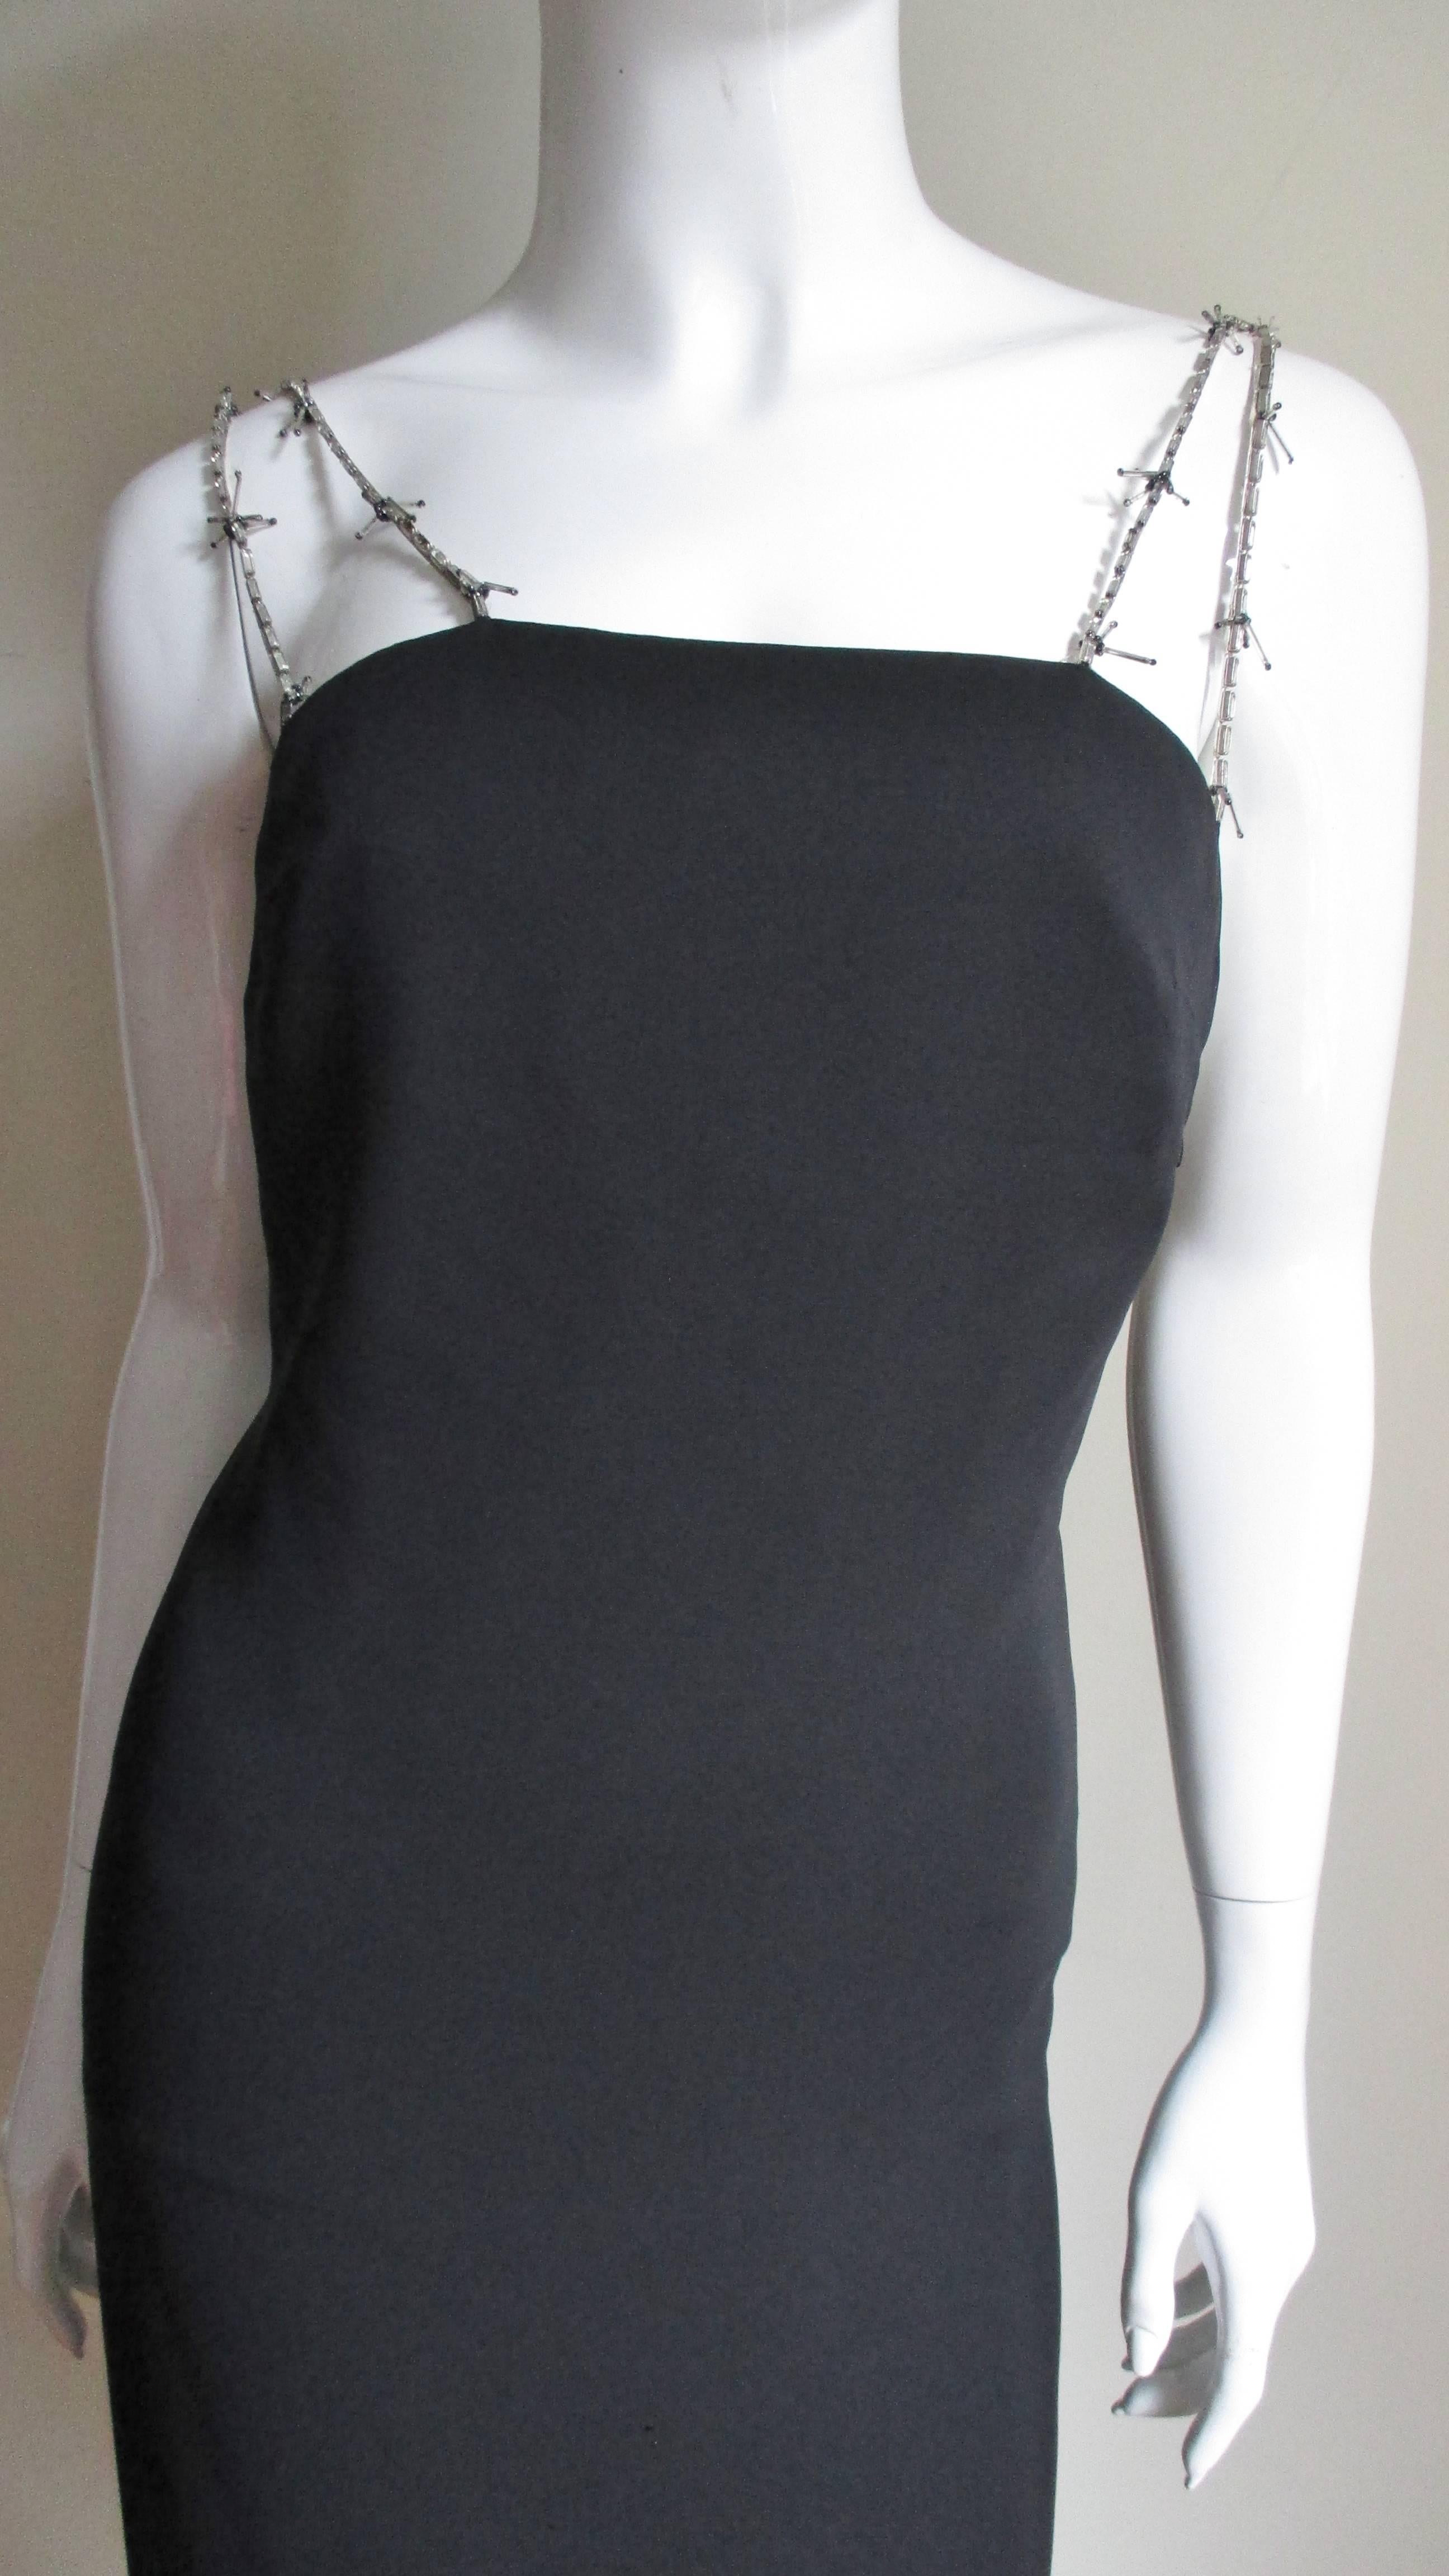 Une belle robe en soie noire avec des bretelles perlées de Gianni Versace Couture.  Il s'agit d'une robe simple qui épouse le corps avec deux bretelles à chaque épaule faites de perles tubulaires en verre argenté et de perles de rocaille en verre